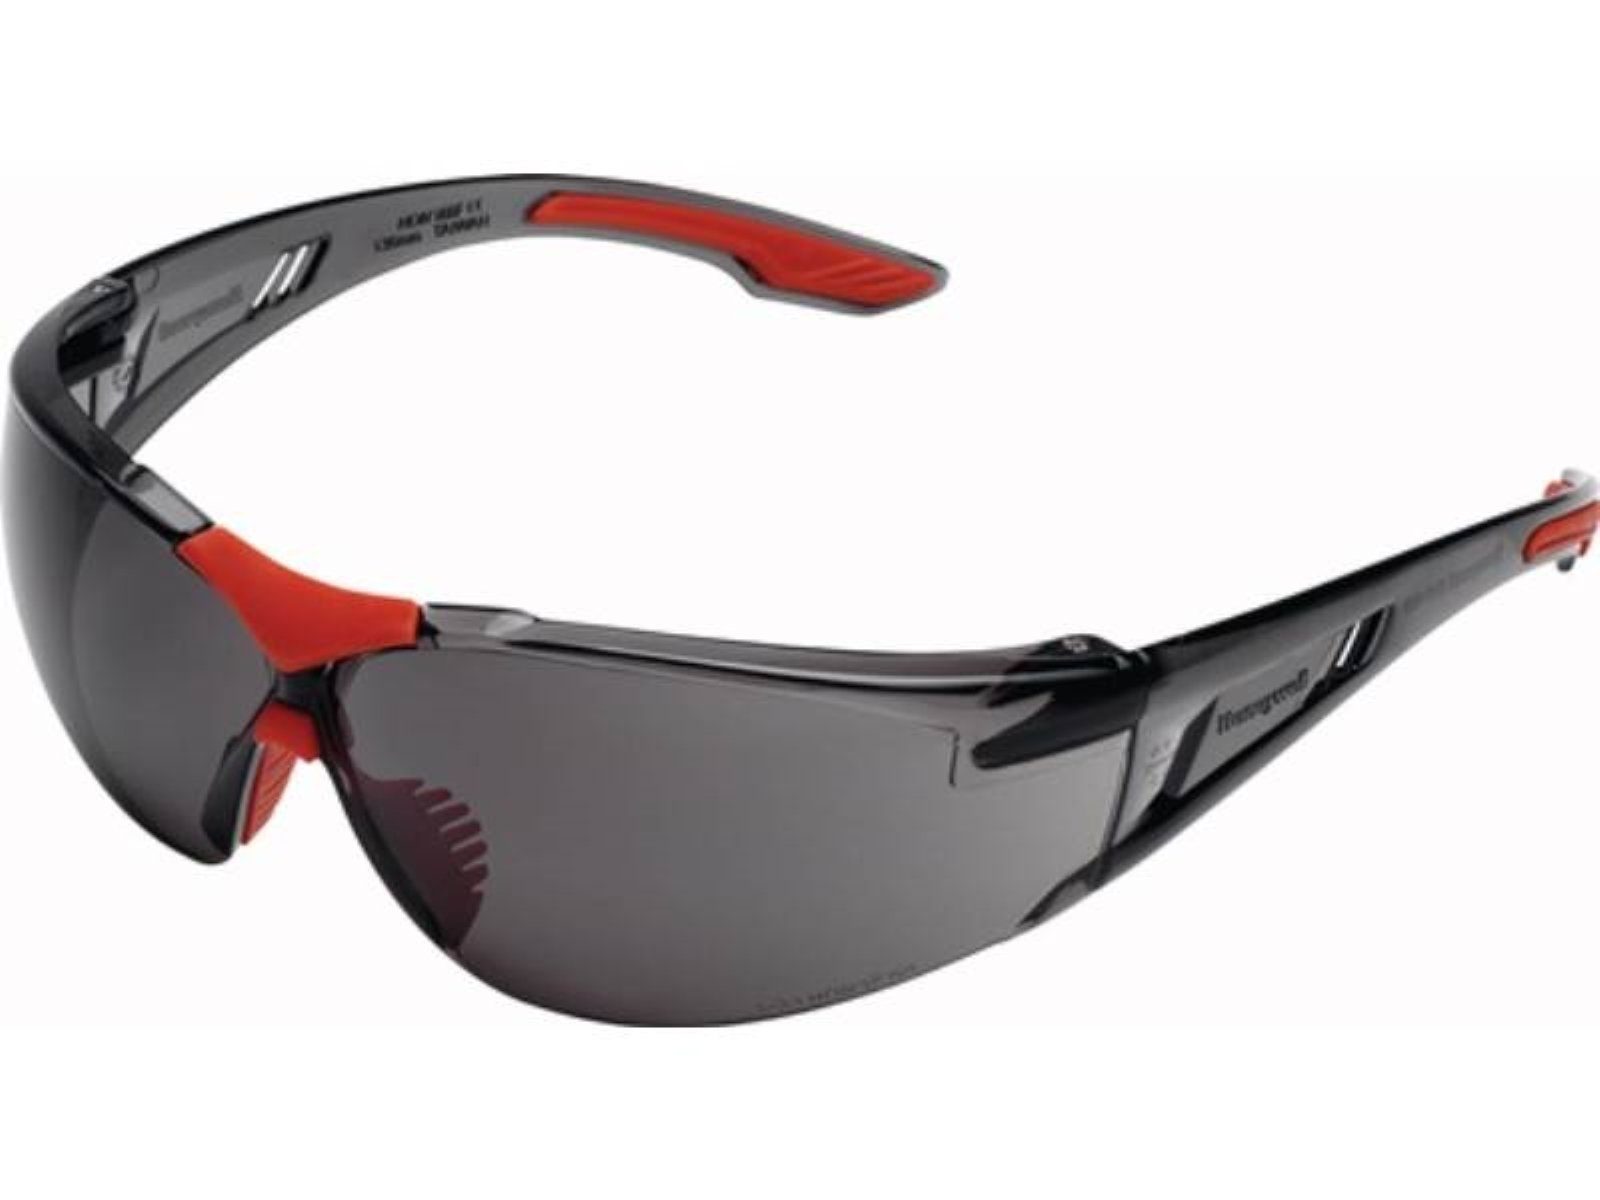 Honeywell Arbeitsschutzbrille Schutzbrille SVP-400 EN 166 Bügel grau,Scheiben grau getönt HONEYWEL | Schutzbrillen